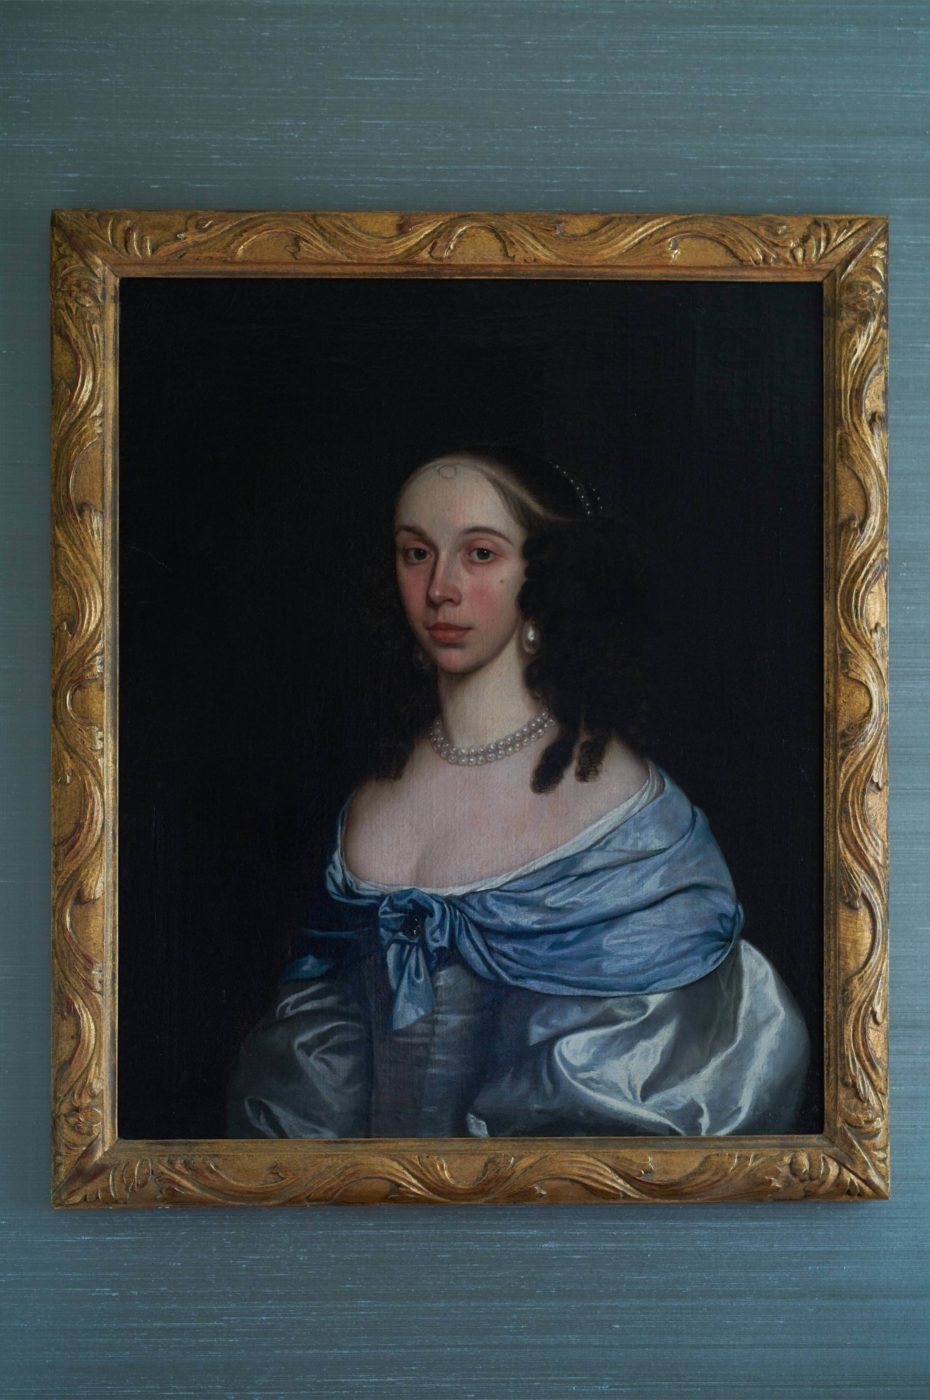 A portrait of an aristocrat lady